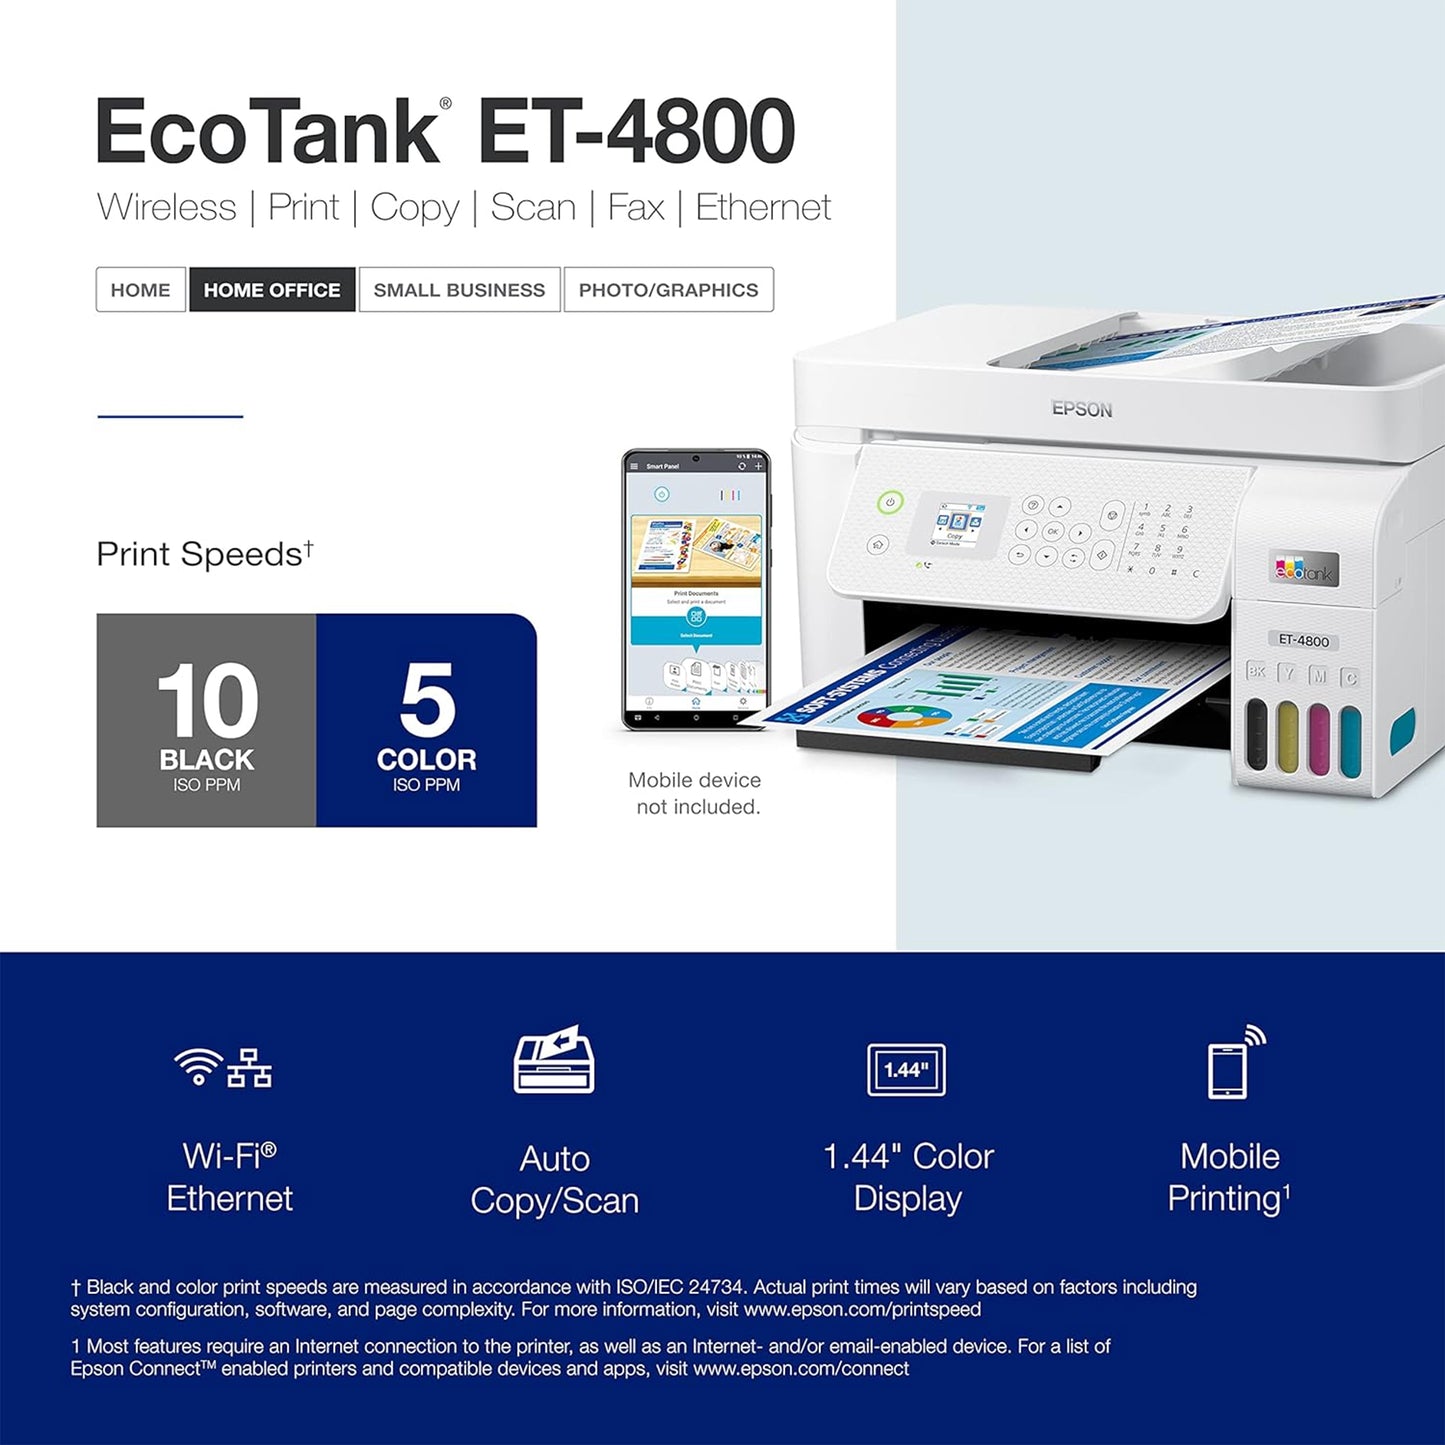 طابعة Epson EcoTank ET-4800 اللاسلكية الكل في واحد Supertank خالية من خرطوشة مع ماسح ضوئي وناسخة وفاكس ووحدة تغذية المستندات التلقائية وإيثرنت. ضمان محدود لمدة عام كامل (قسط متجدد)، أبيض